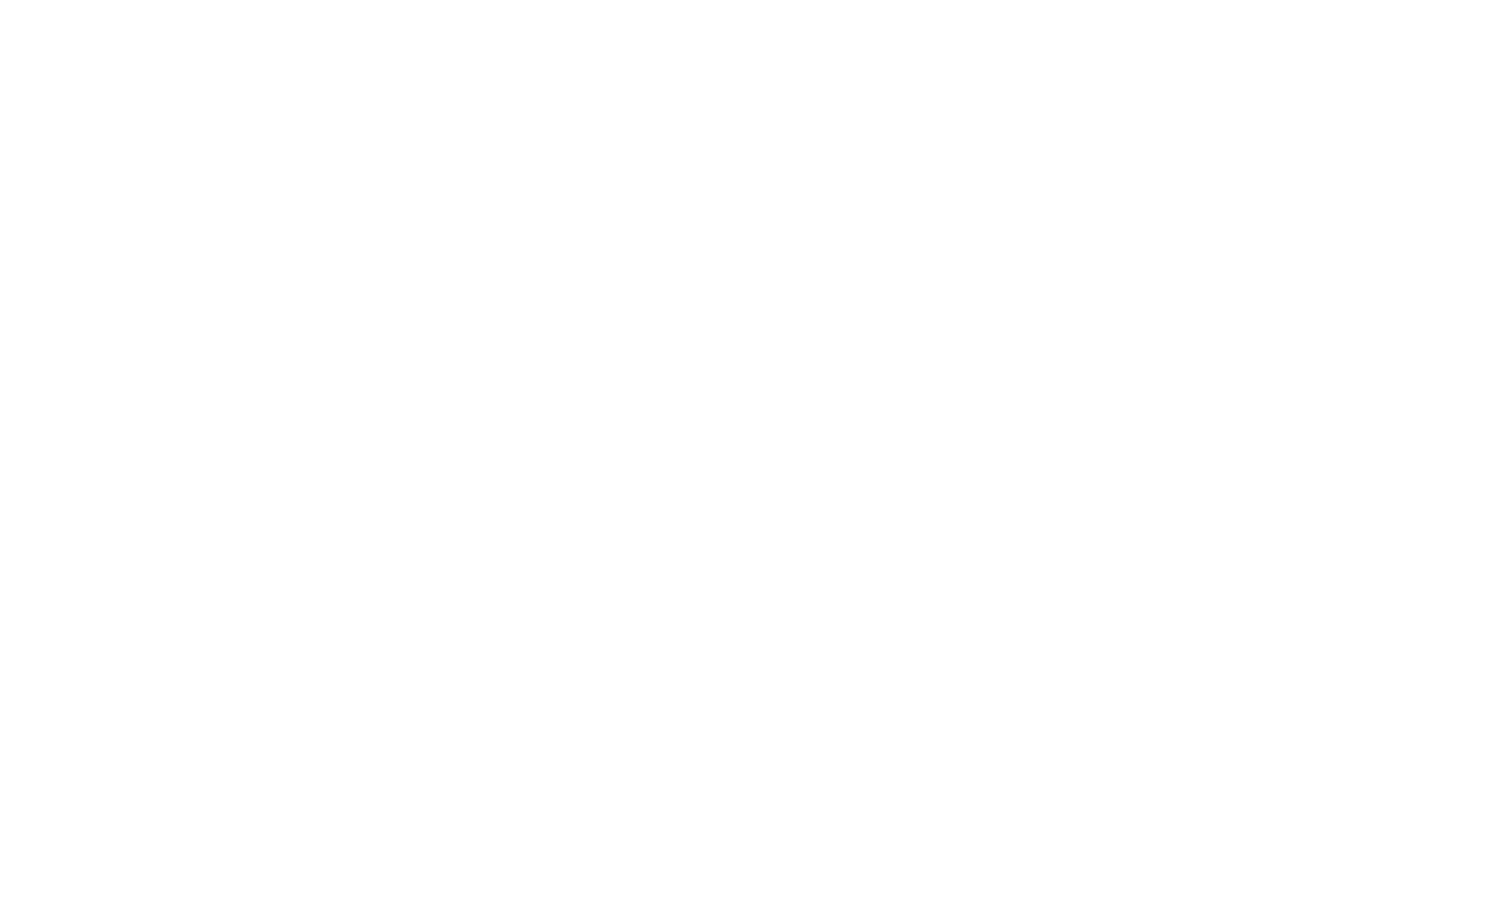 Hendrick Chevrolet Hoover dealership logo